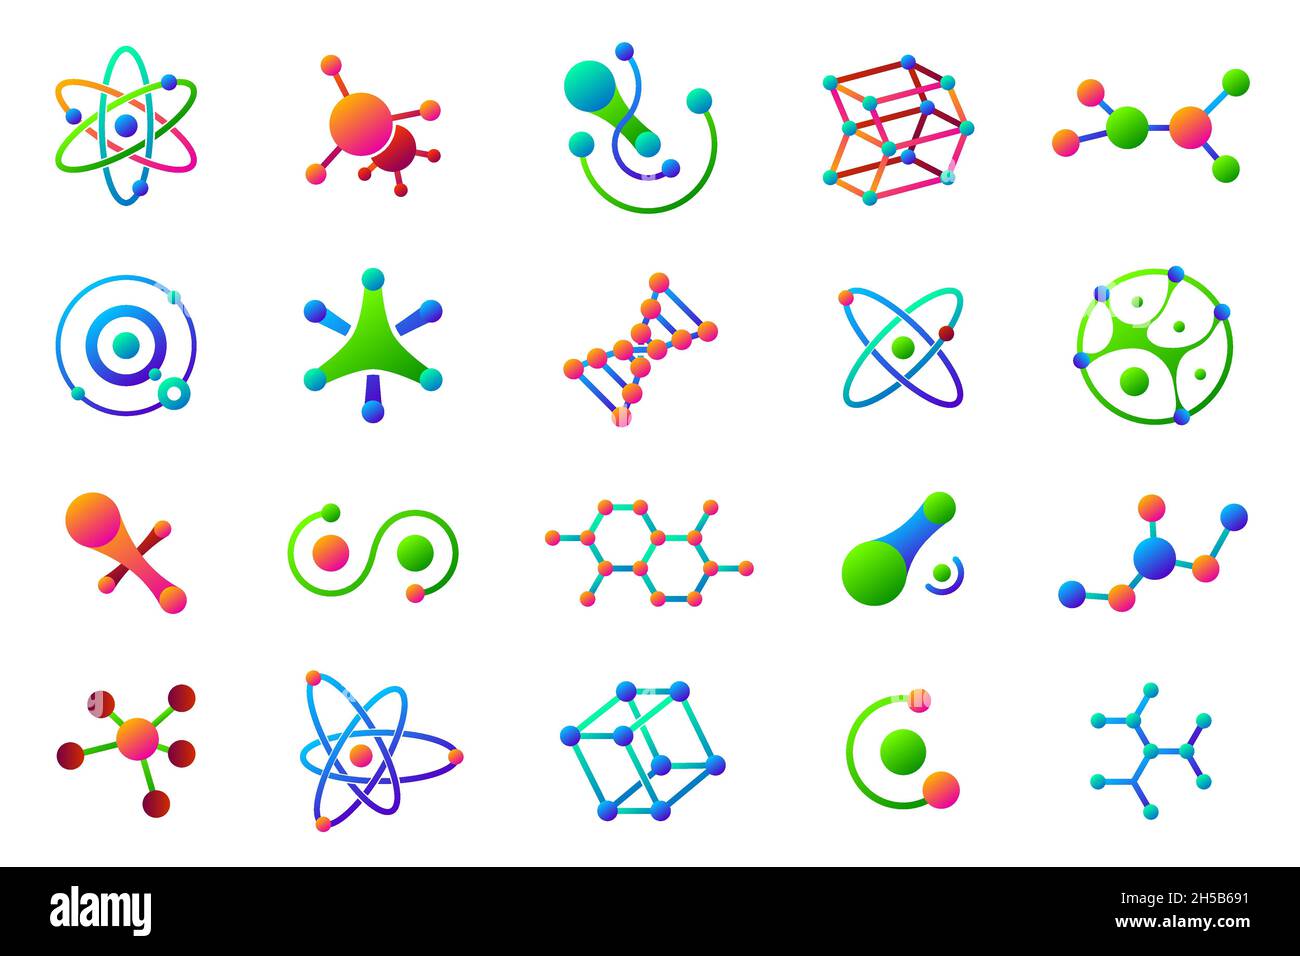 Verbundene Moleküle. Struktur Molekül, Logo medizinische Wissenschaft. Isolierte chemische Symbole, Technologie-Logo. Bunte Bio-Vektor-Symbole der letzten Zeit Stock Vektor